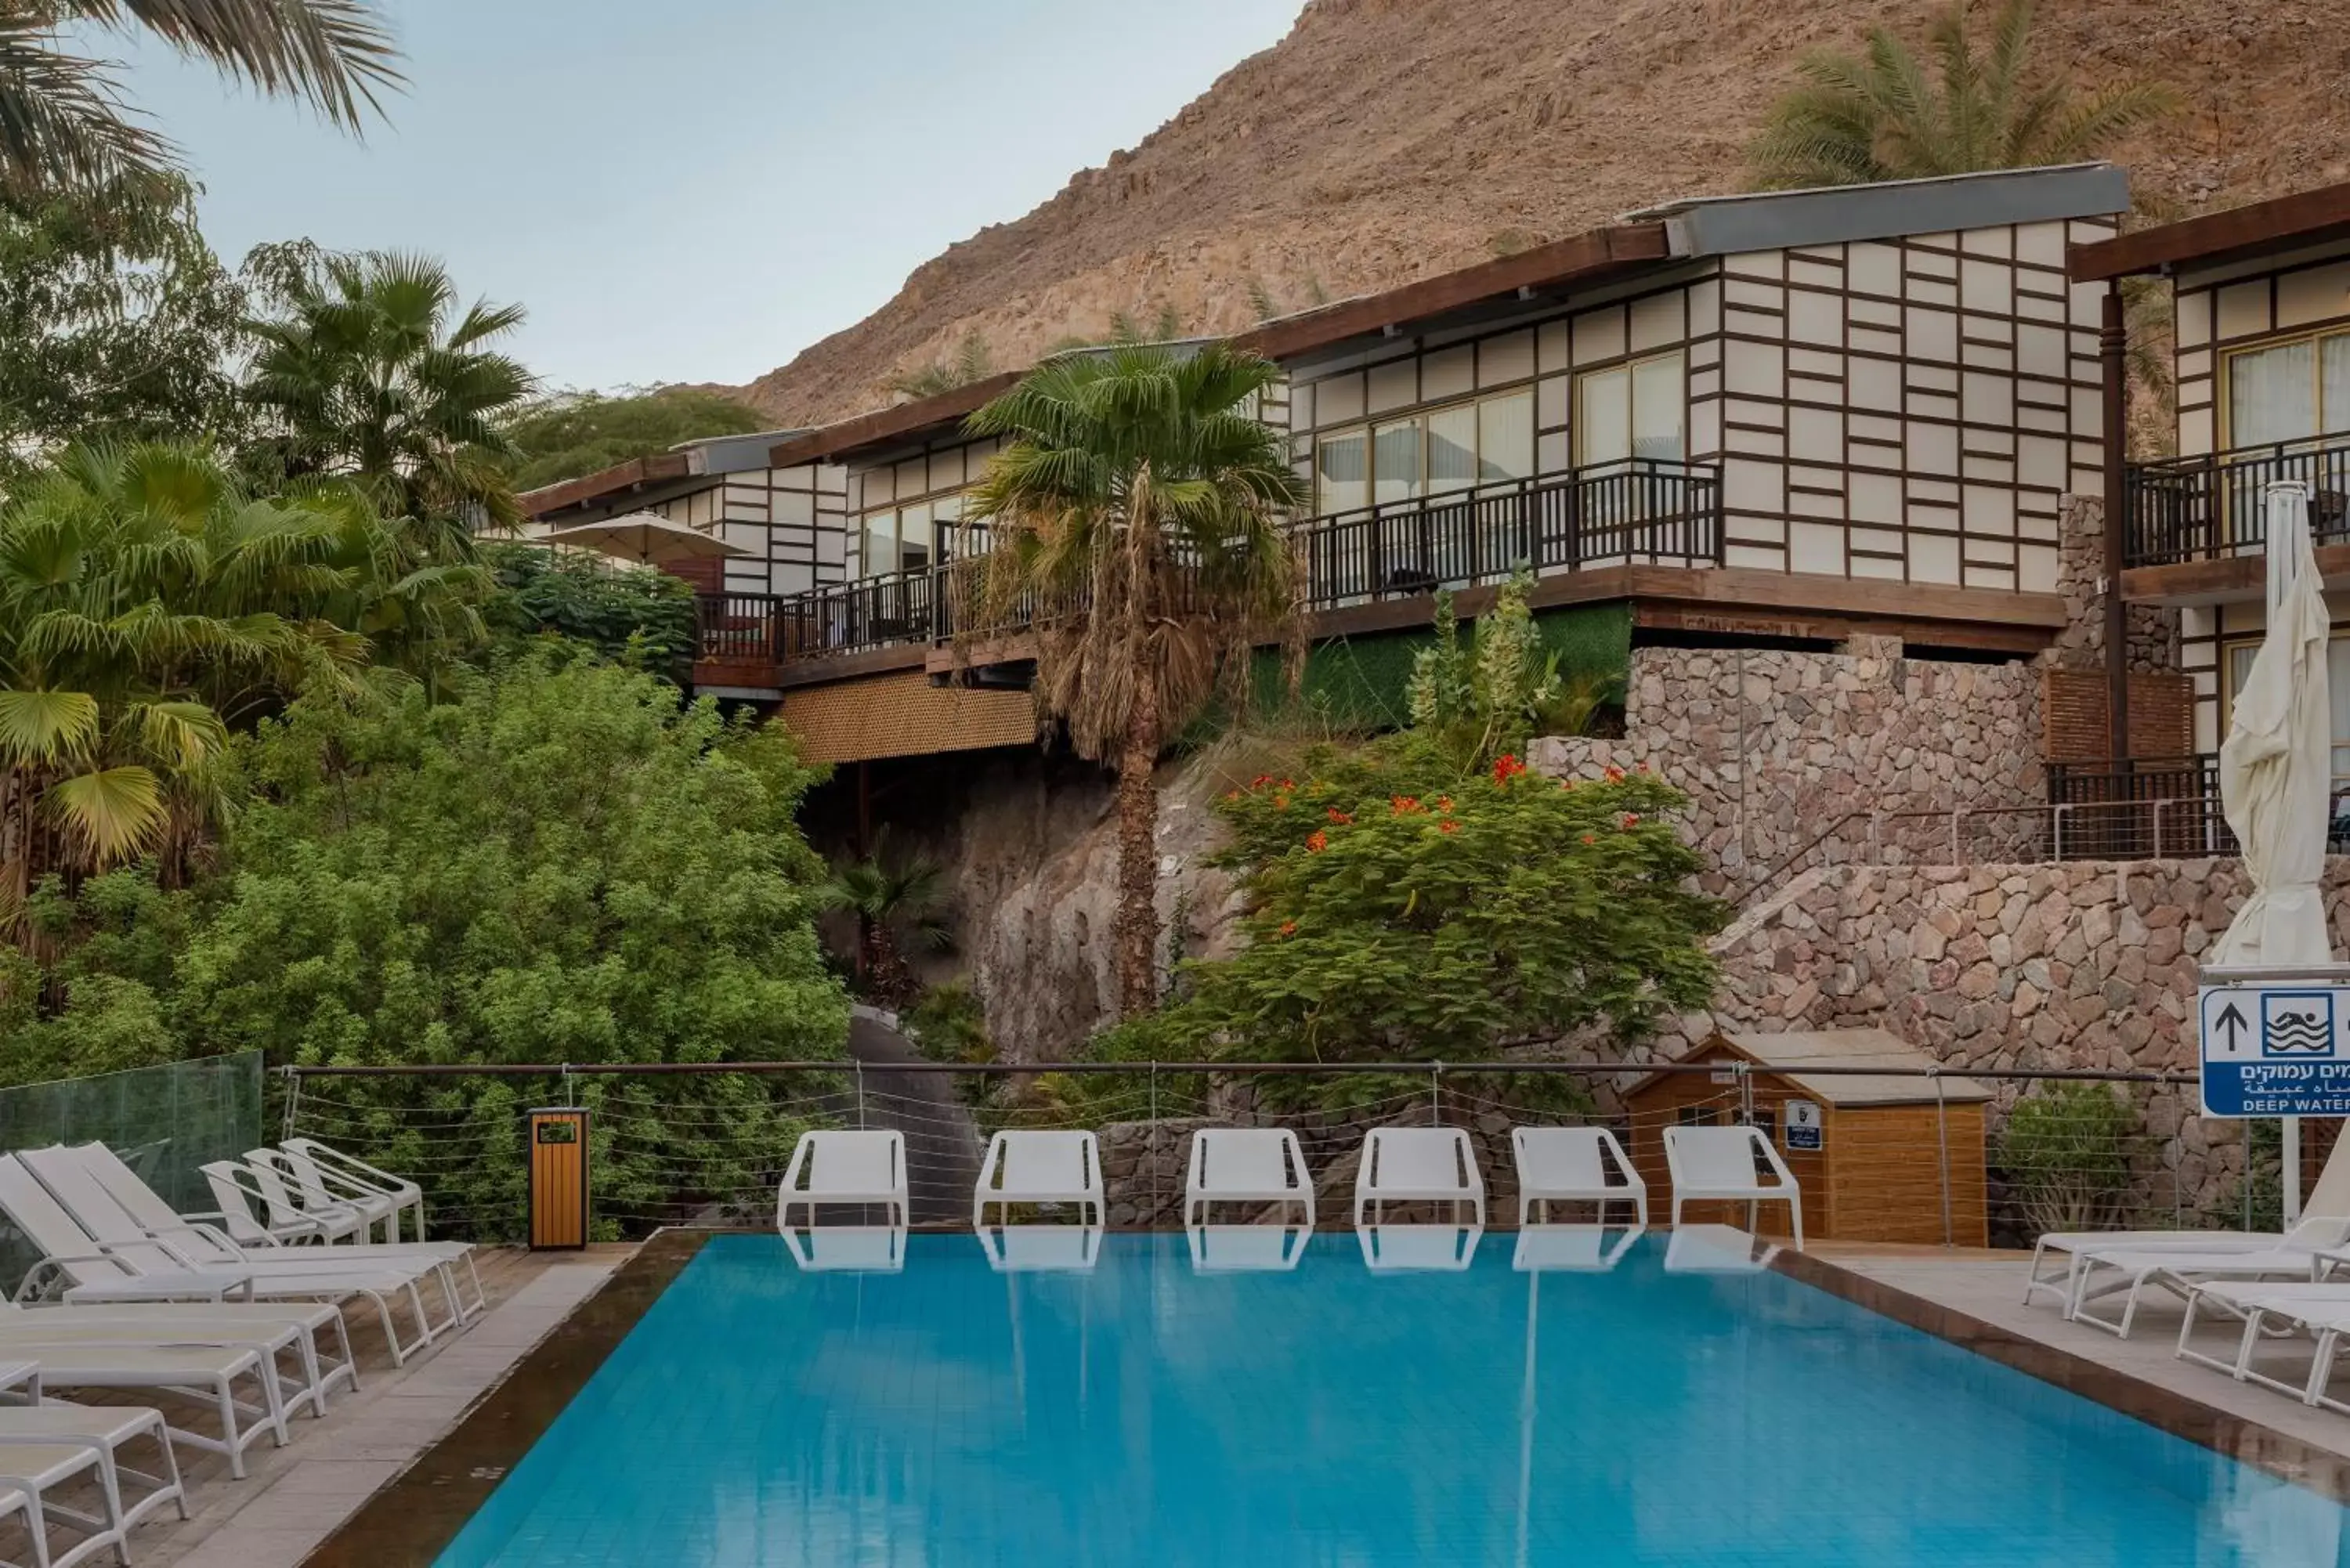 Swimming pool, Property Building in Herbert Samuel Royal Shangri-La Eilat